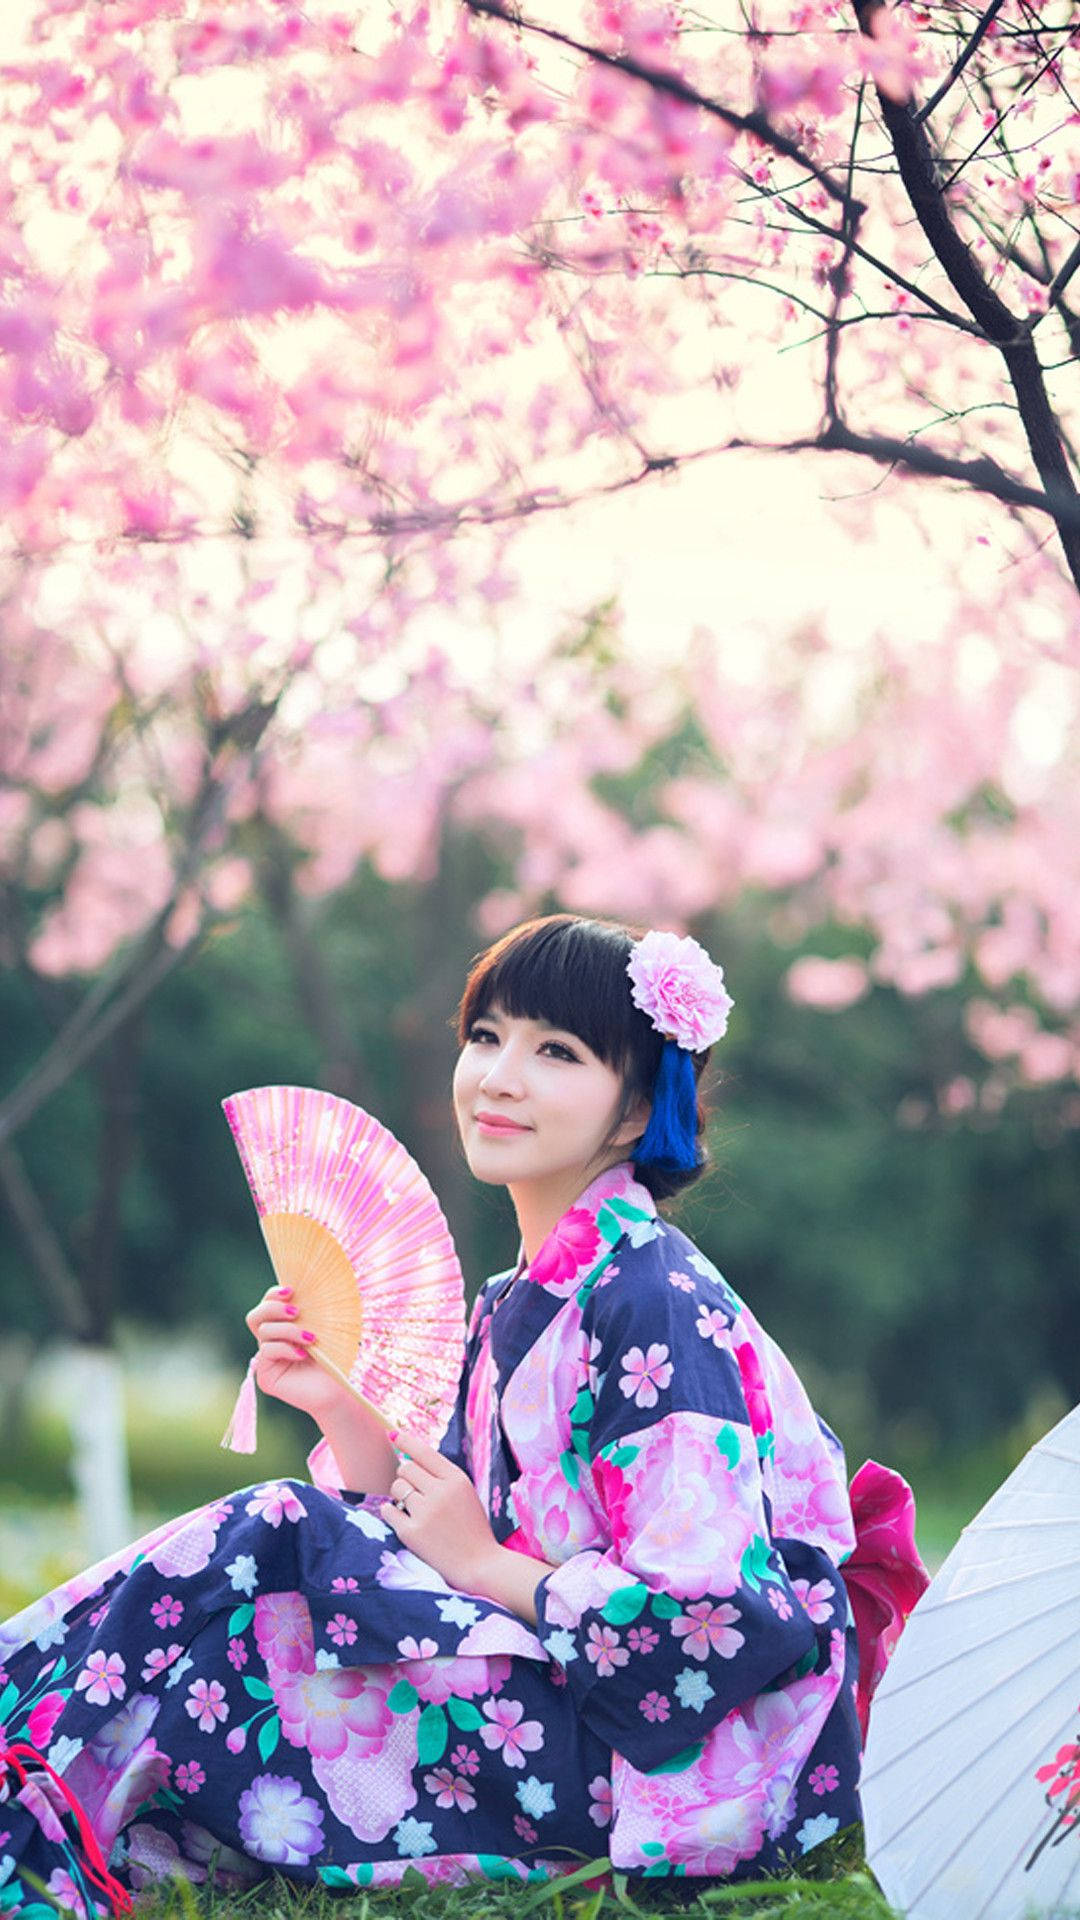 Chicajaponesa En Yukata Floral Junto A Un Árbol De Sakura. Fondo de pantalla